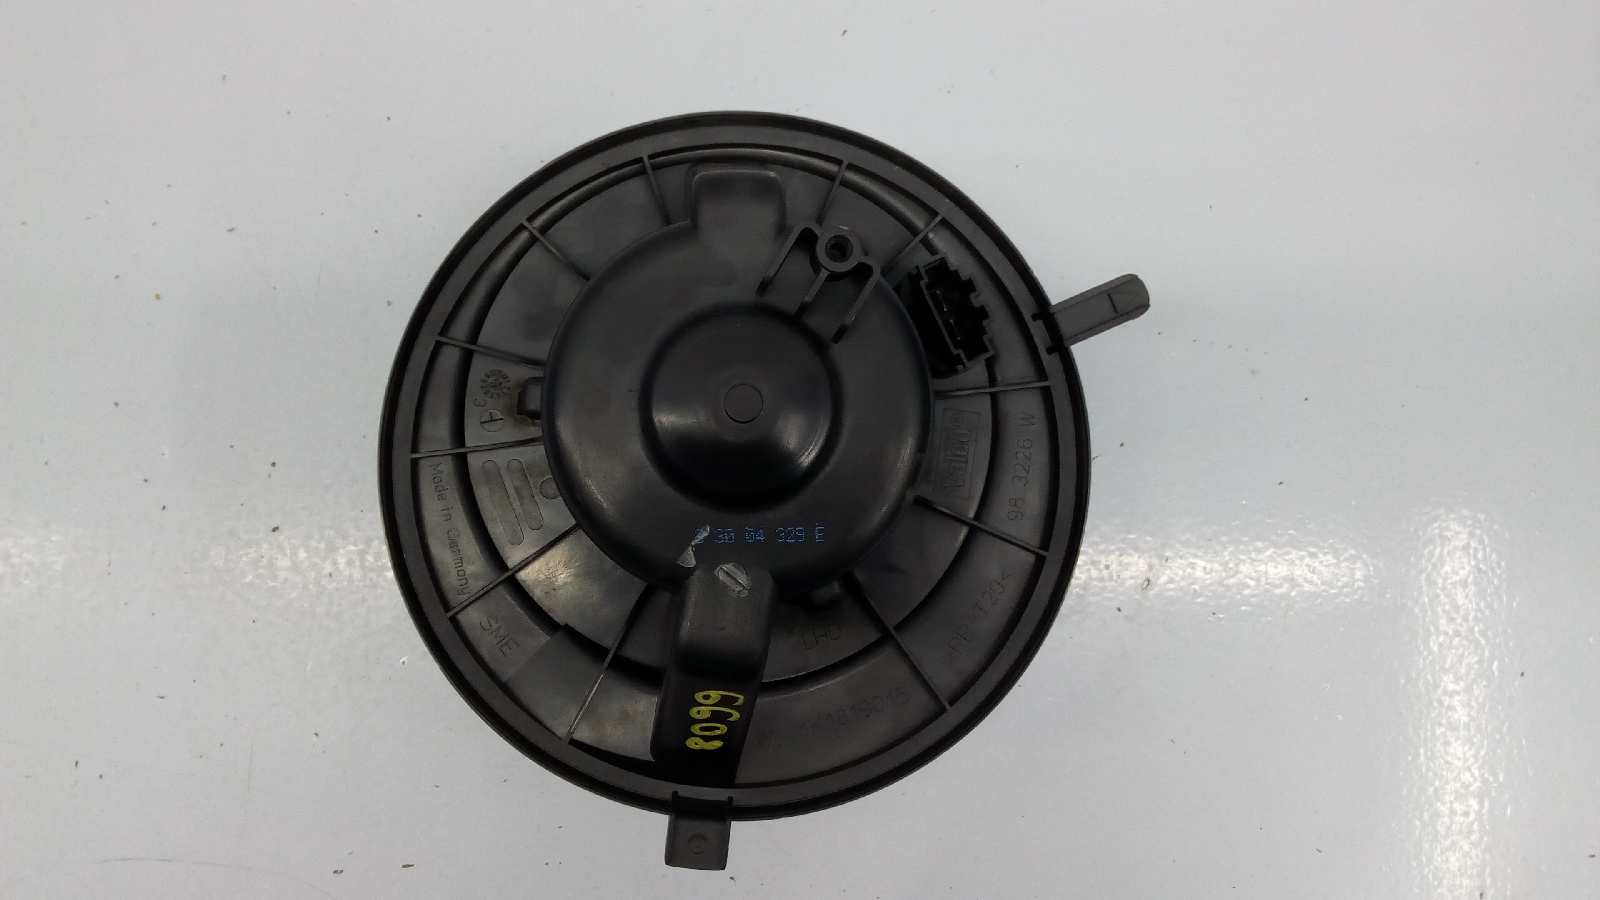 VOLKSWAGEN Caddy 3 generation (2004-2015) Heater Blower Fan 1K1819015, E1-B6-55-2 18528307